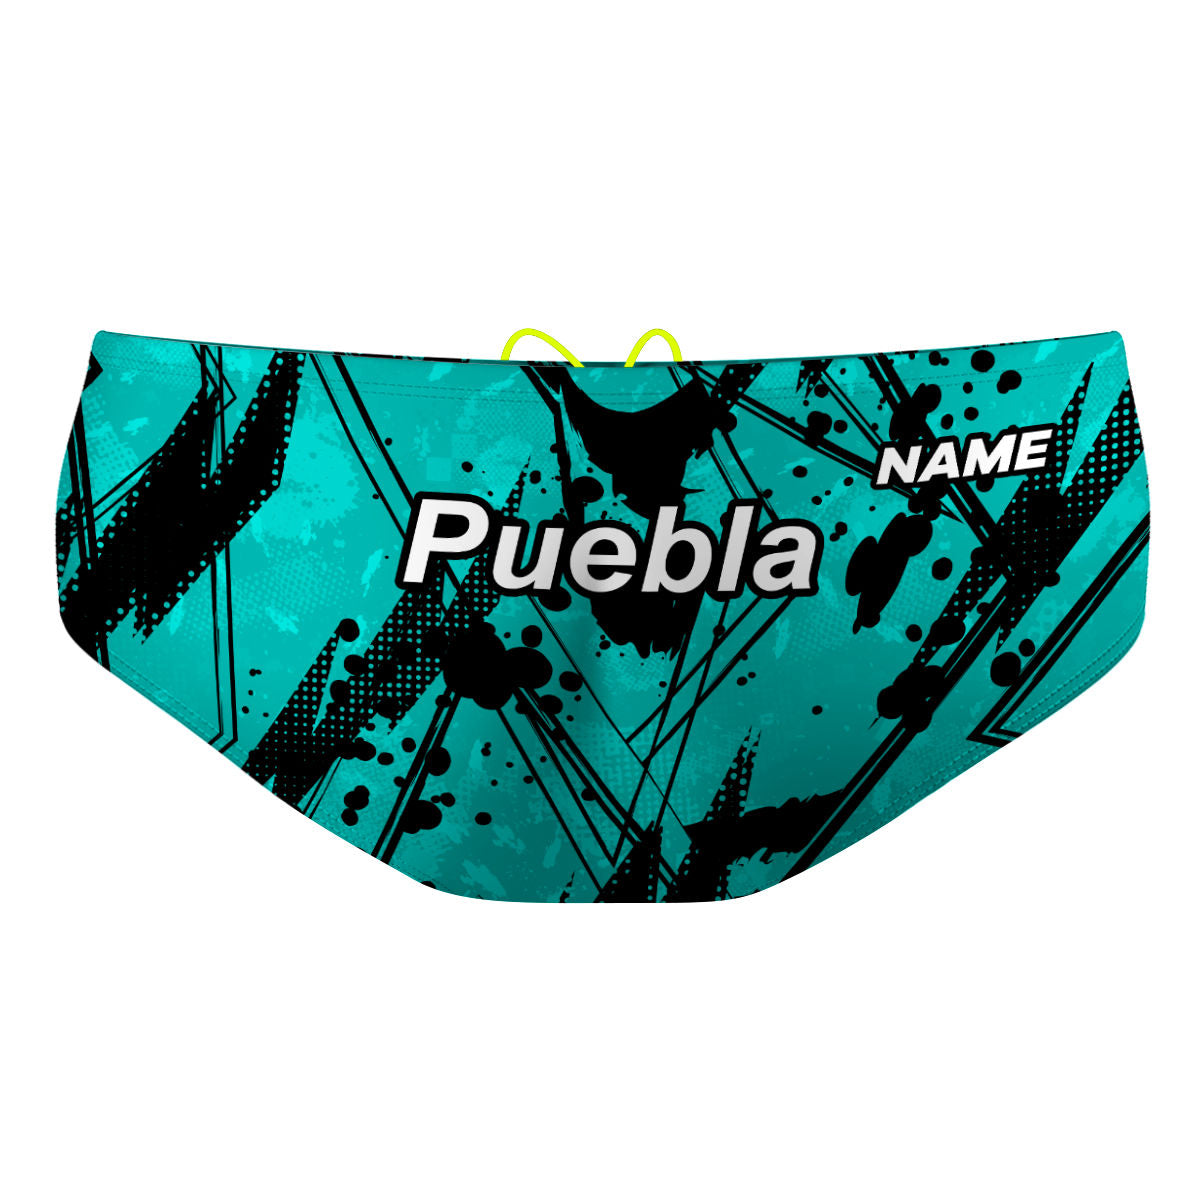 NV Puebla - Classic Brief Swimsuit